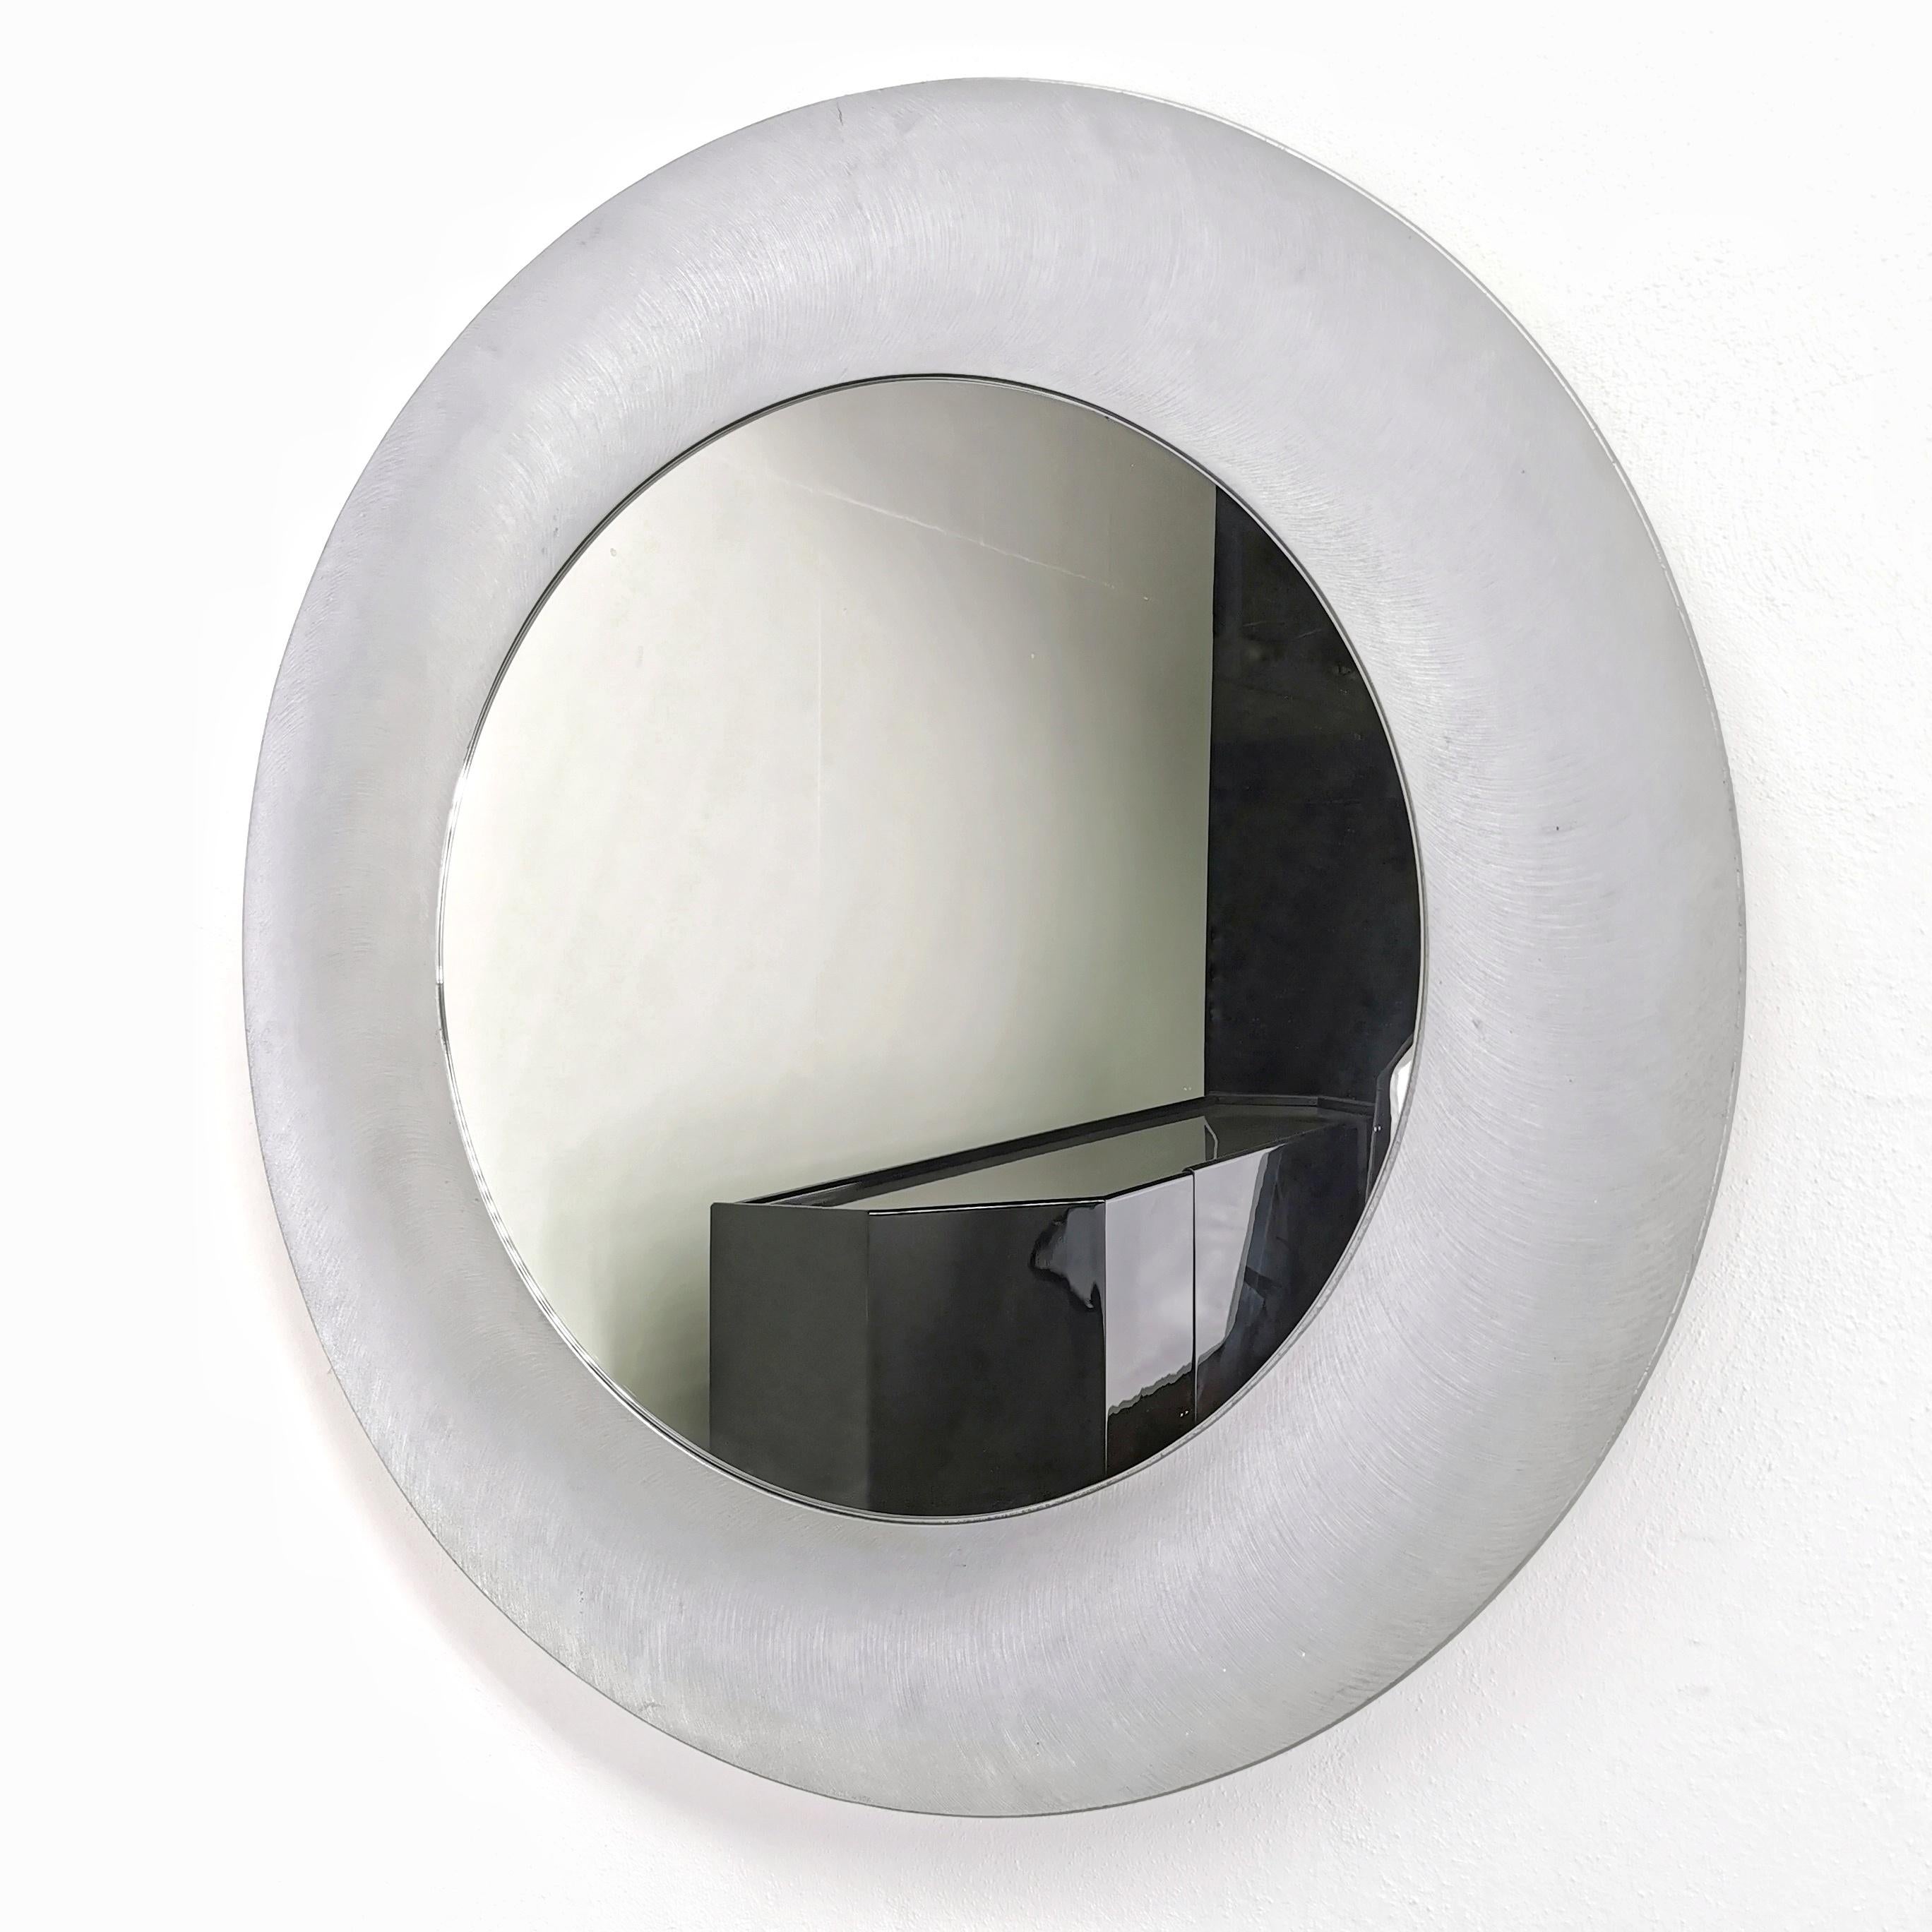 Seltener runder skulpturaler Spiegel im modernistischen Stil  brutalistischen, in den 1970er Jahren vom Bildhauer Lorenzo Burchiellaro entworfenen Gebäude. 
der Spiegel zeichnet sich durch einen strukturierten Aluminiumguss mit einer leicht konkaven